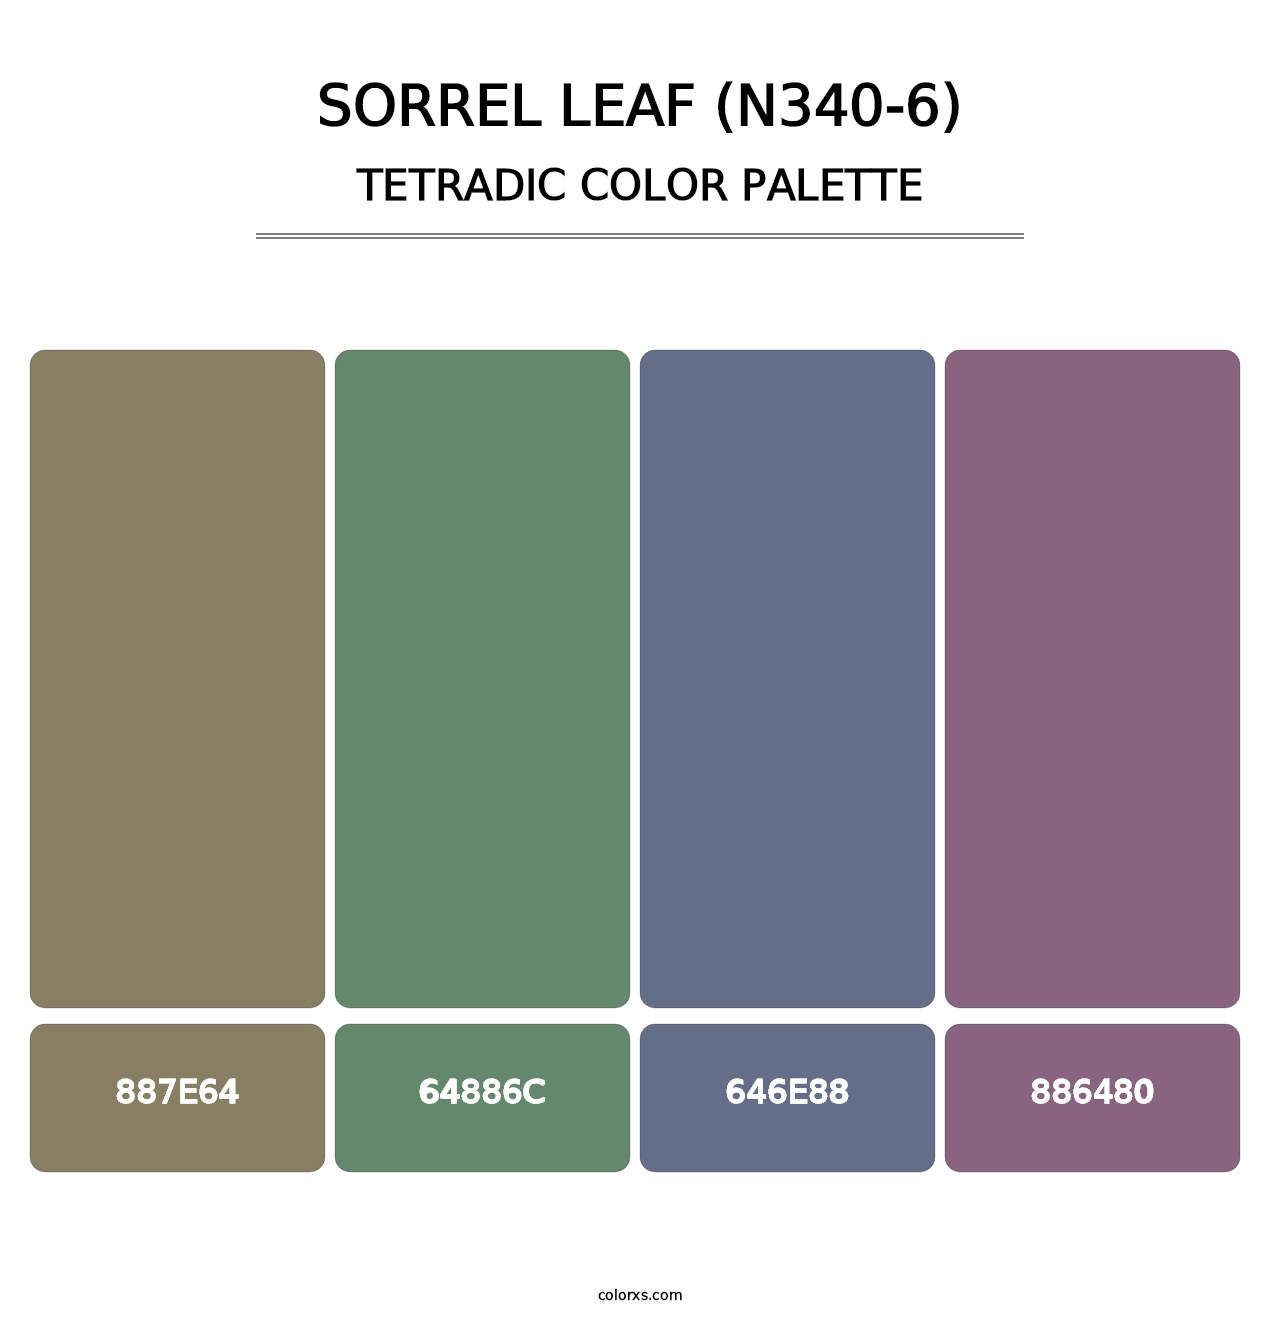 Sorrel Leaf (N340-6) - Tetradic Color Palette